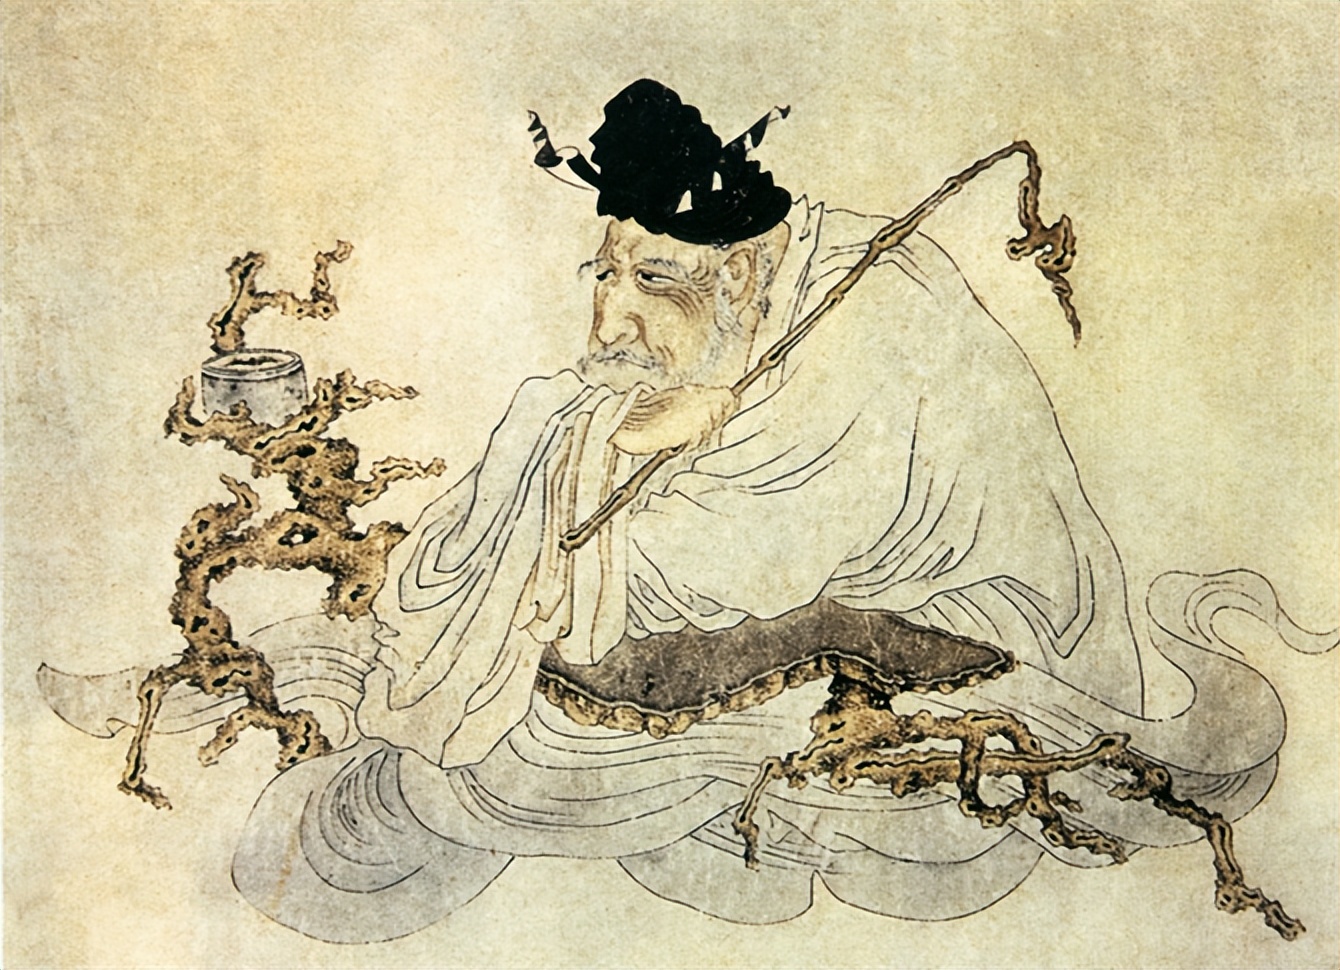 清朝画家罗聘自称见过鬼,还画下了鬼的样子,从乾隆时期流传至今